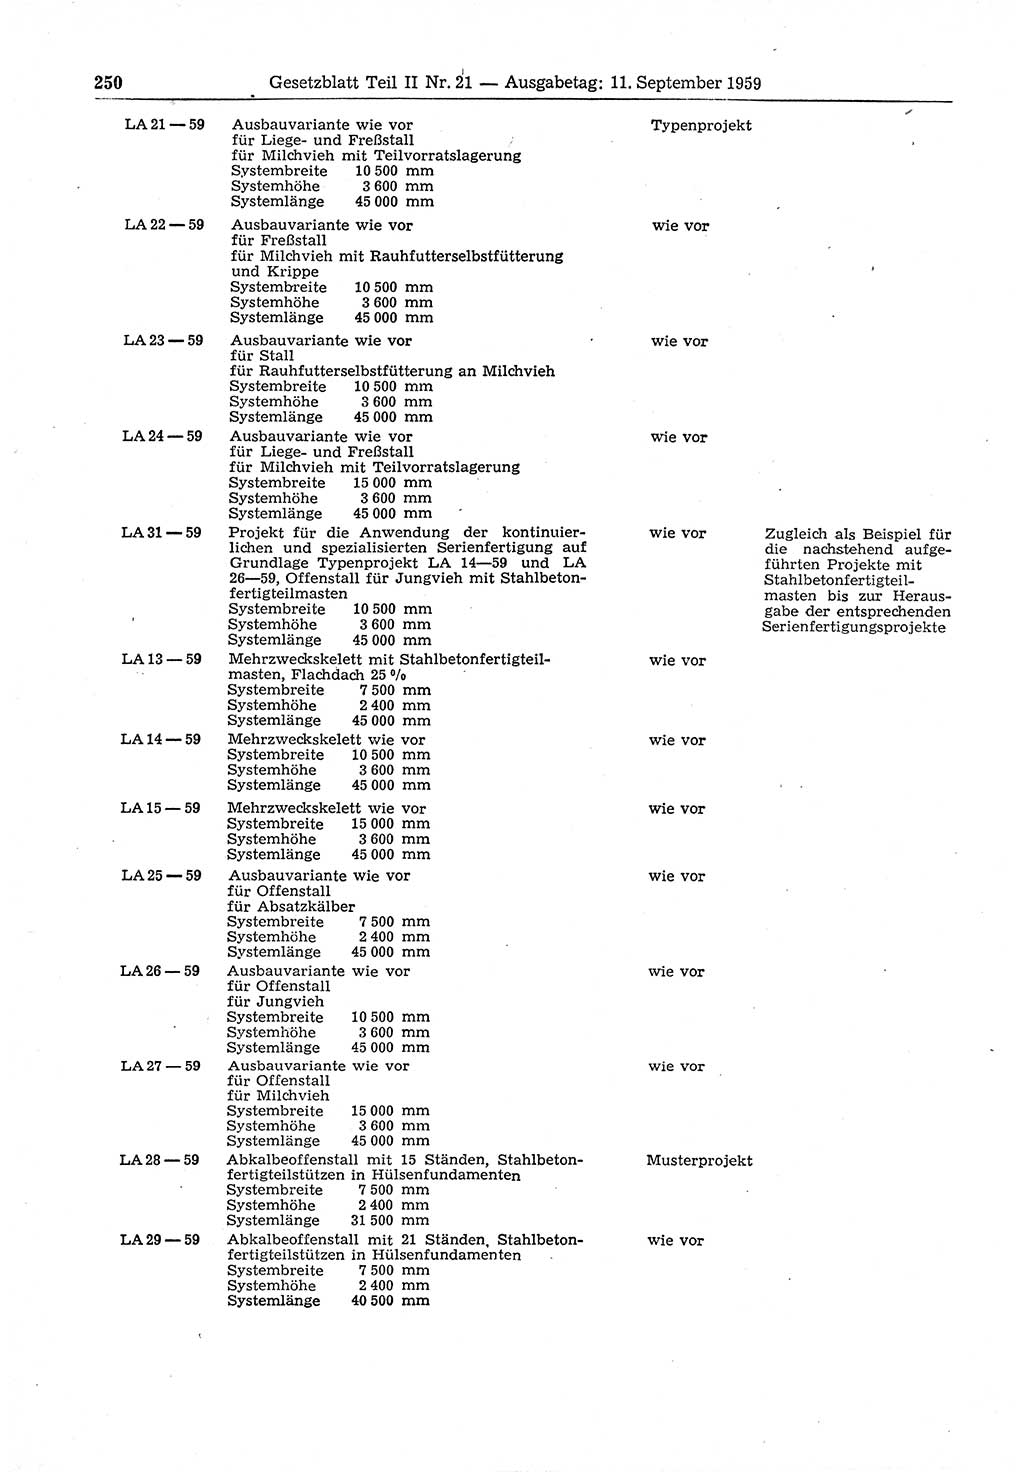 Gesetzblatt (GBl.) der Deutschen Demokratischen Republik (DDR) Teil ⅠⅠ 1959, Seite 250 (GBl. DDR ⅠⅠ 1959, S. 250)